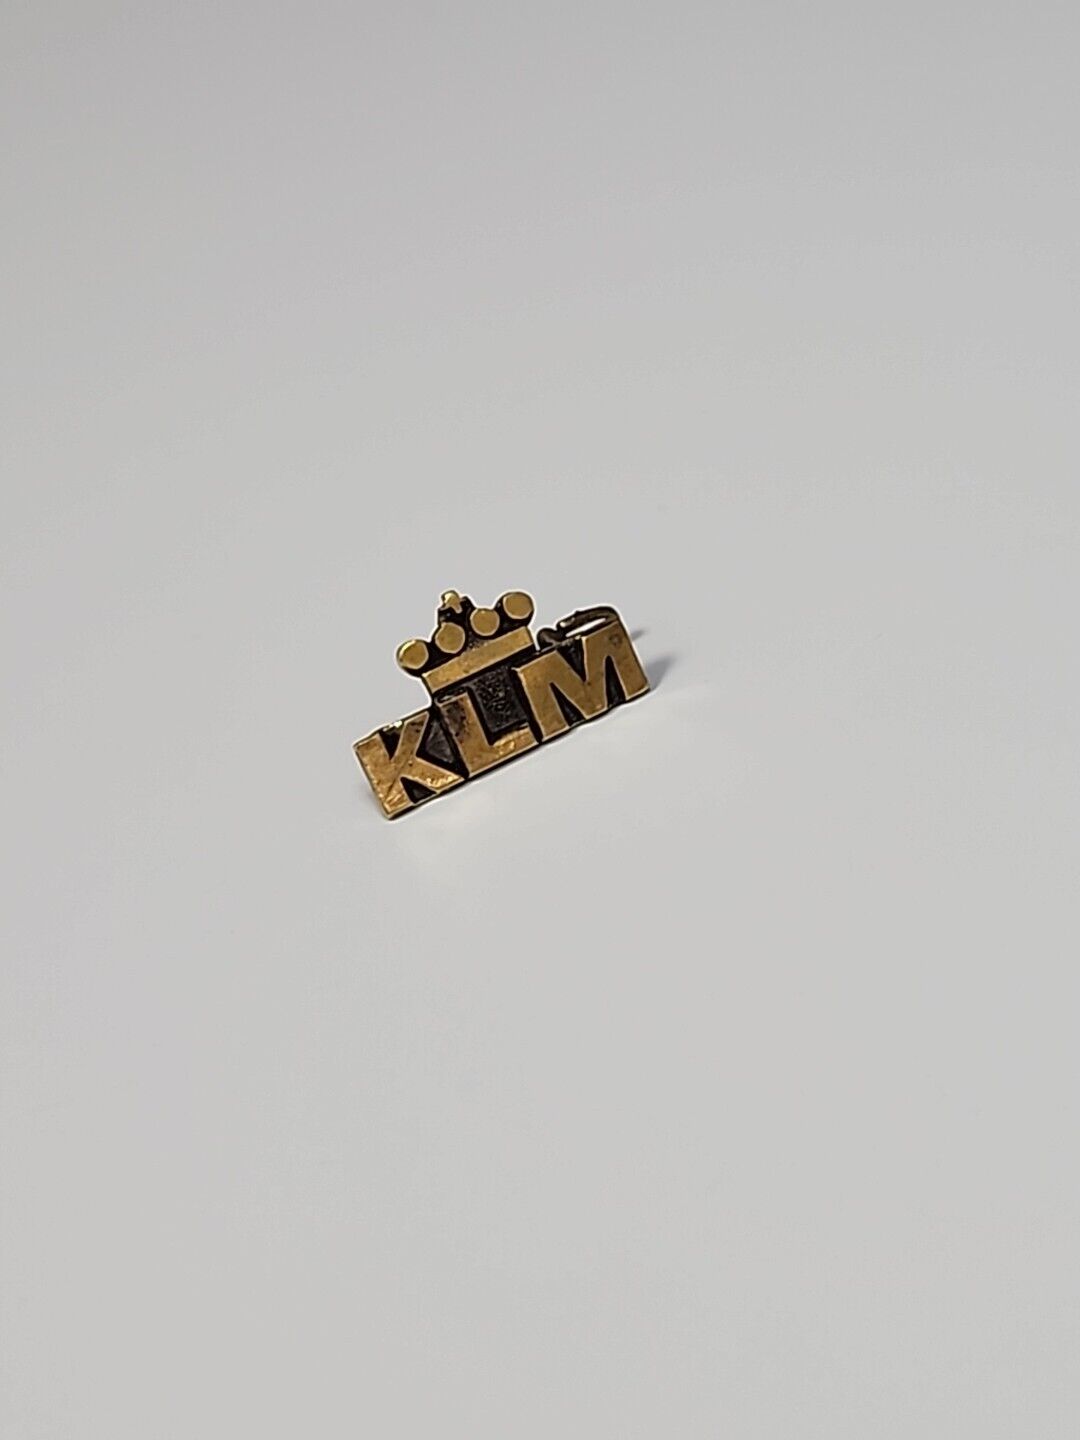 K L M Miniature LOGO Lapel Pin Dutch Airlines Vintage